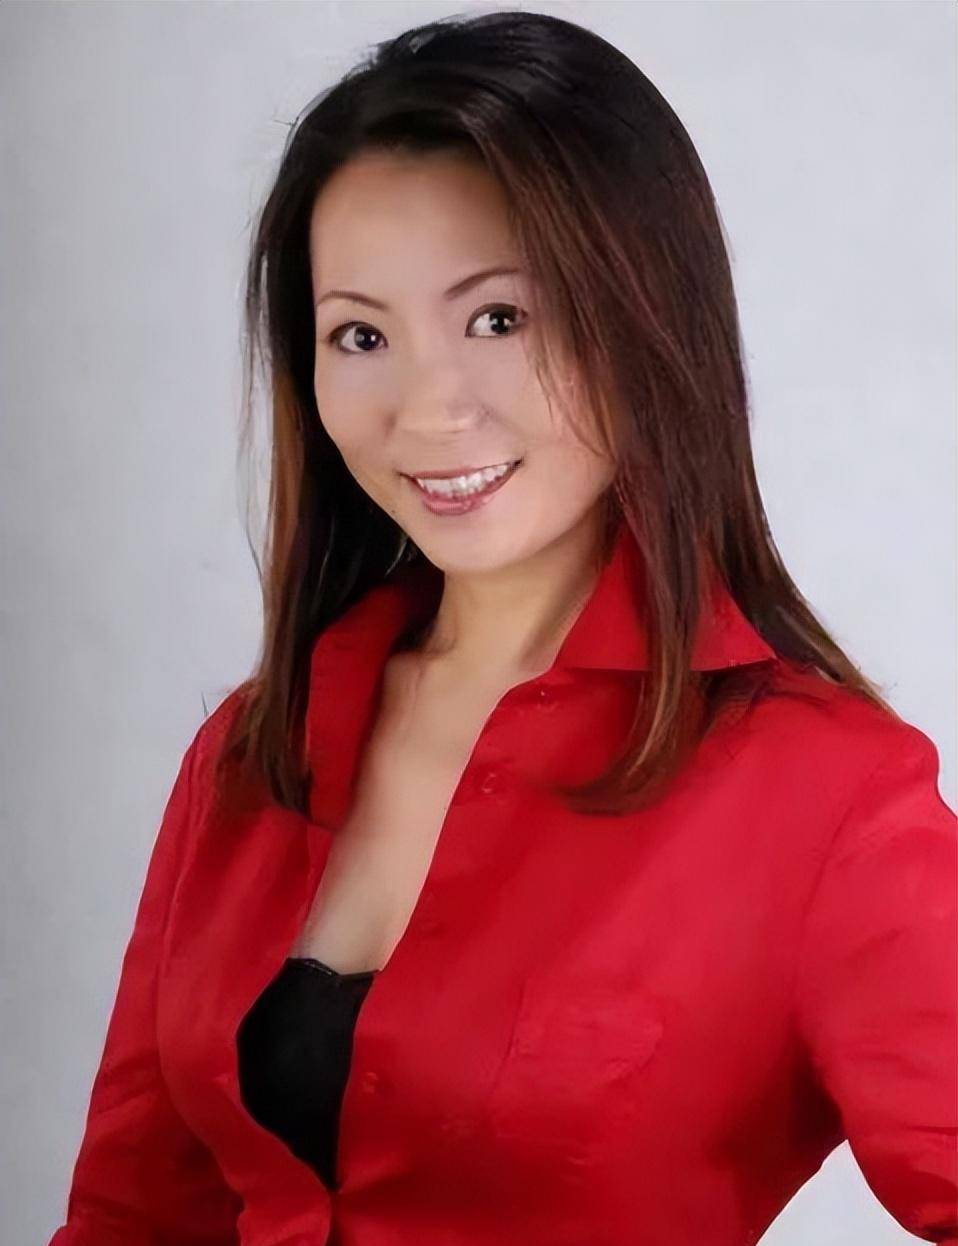 20岁的程琳就拍摄了一支mtv,成为了中国最早拍摄mtv的女歌手